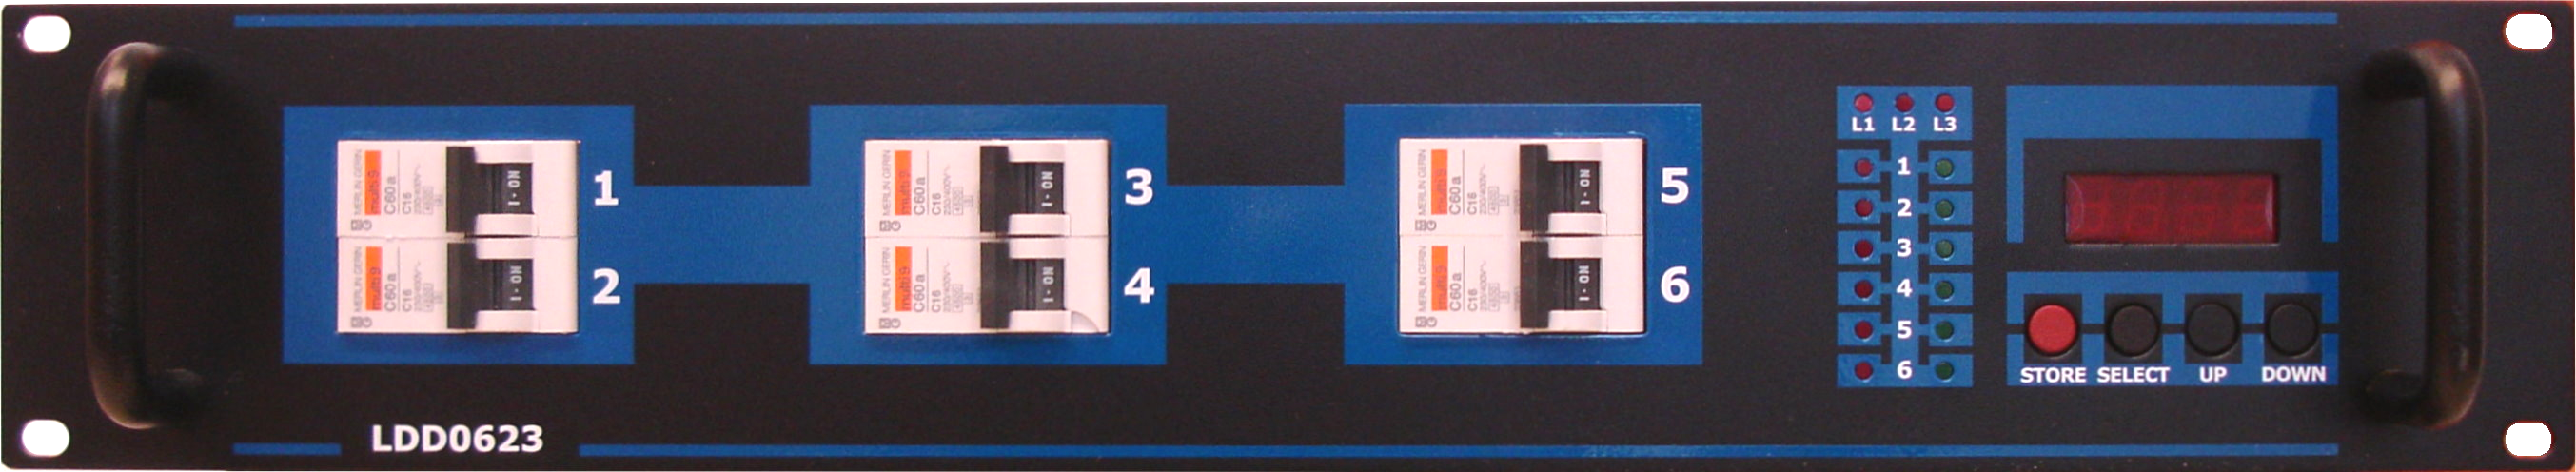 6 X 2,3kW-OS DIGITÁLIS DIMMER 2,3 kw kimeneti teljesítmény csatornánként DMX 512 vezérlés DMX címzés csatornánként (Patch) Előfűtés Csatorna teszt Hőmérsékelet vezérelt csendes ventilátor Harting